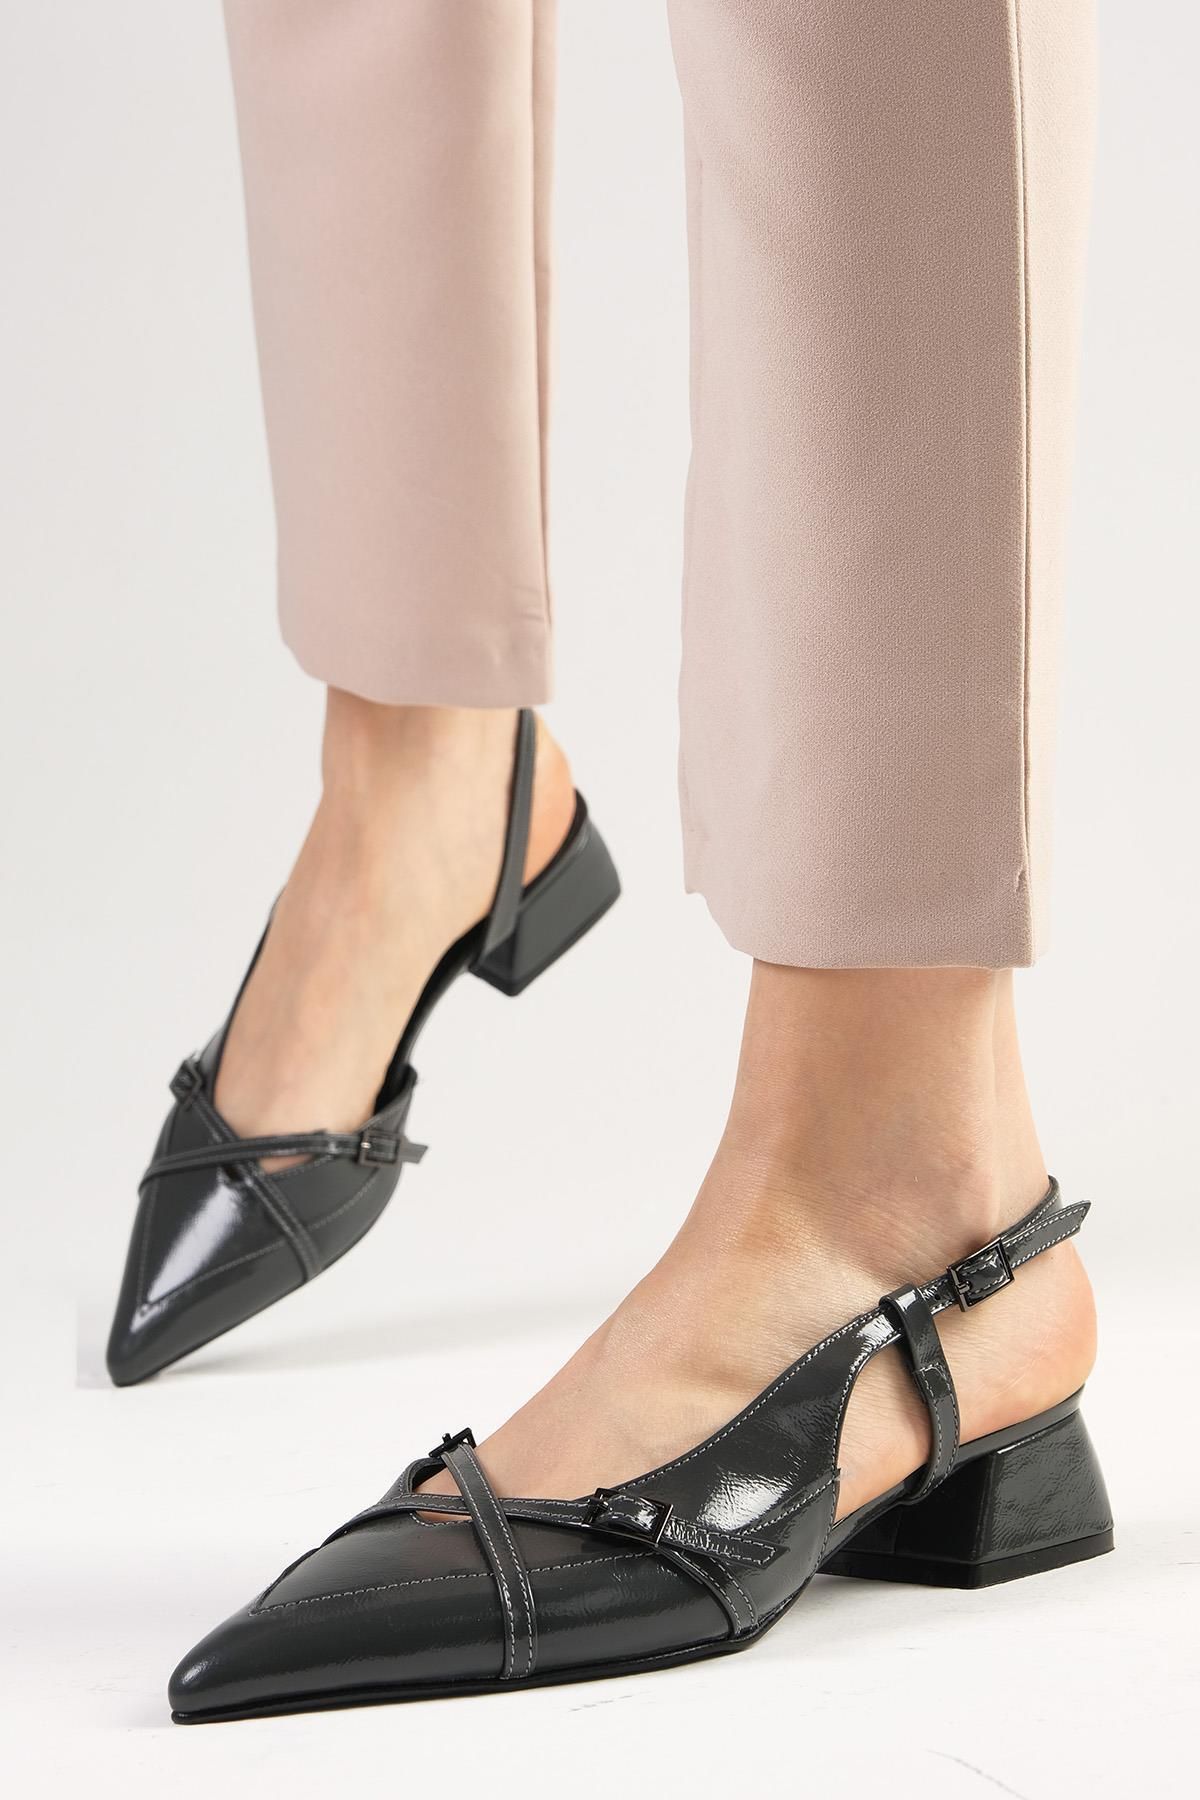 Mio Gusto Mystic Hakiki Rugan Gri Renk Arkası Açık Kadın Kısa Topuklu Ayakkabı